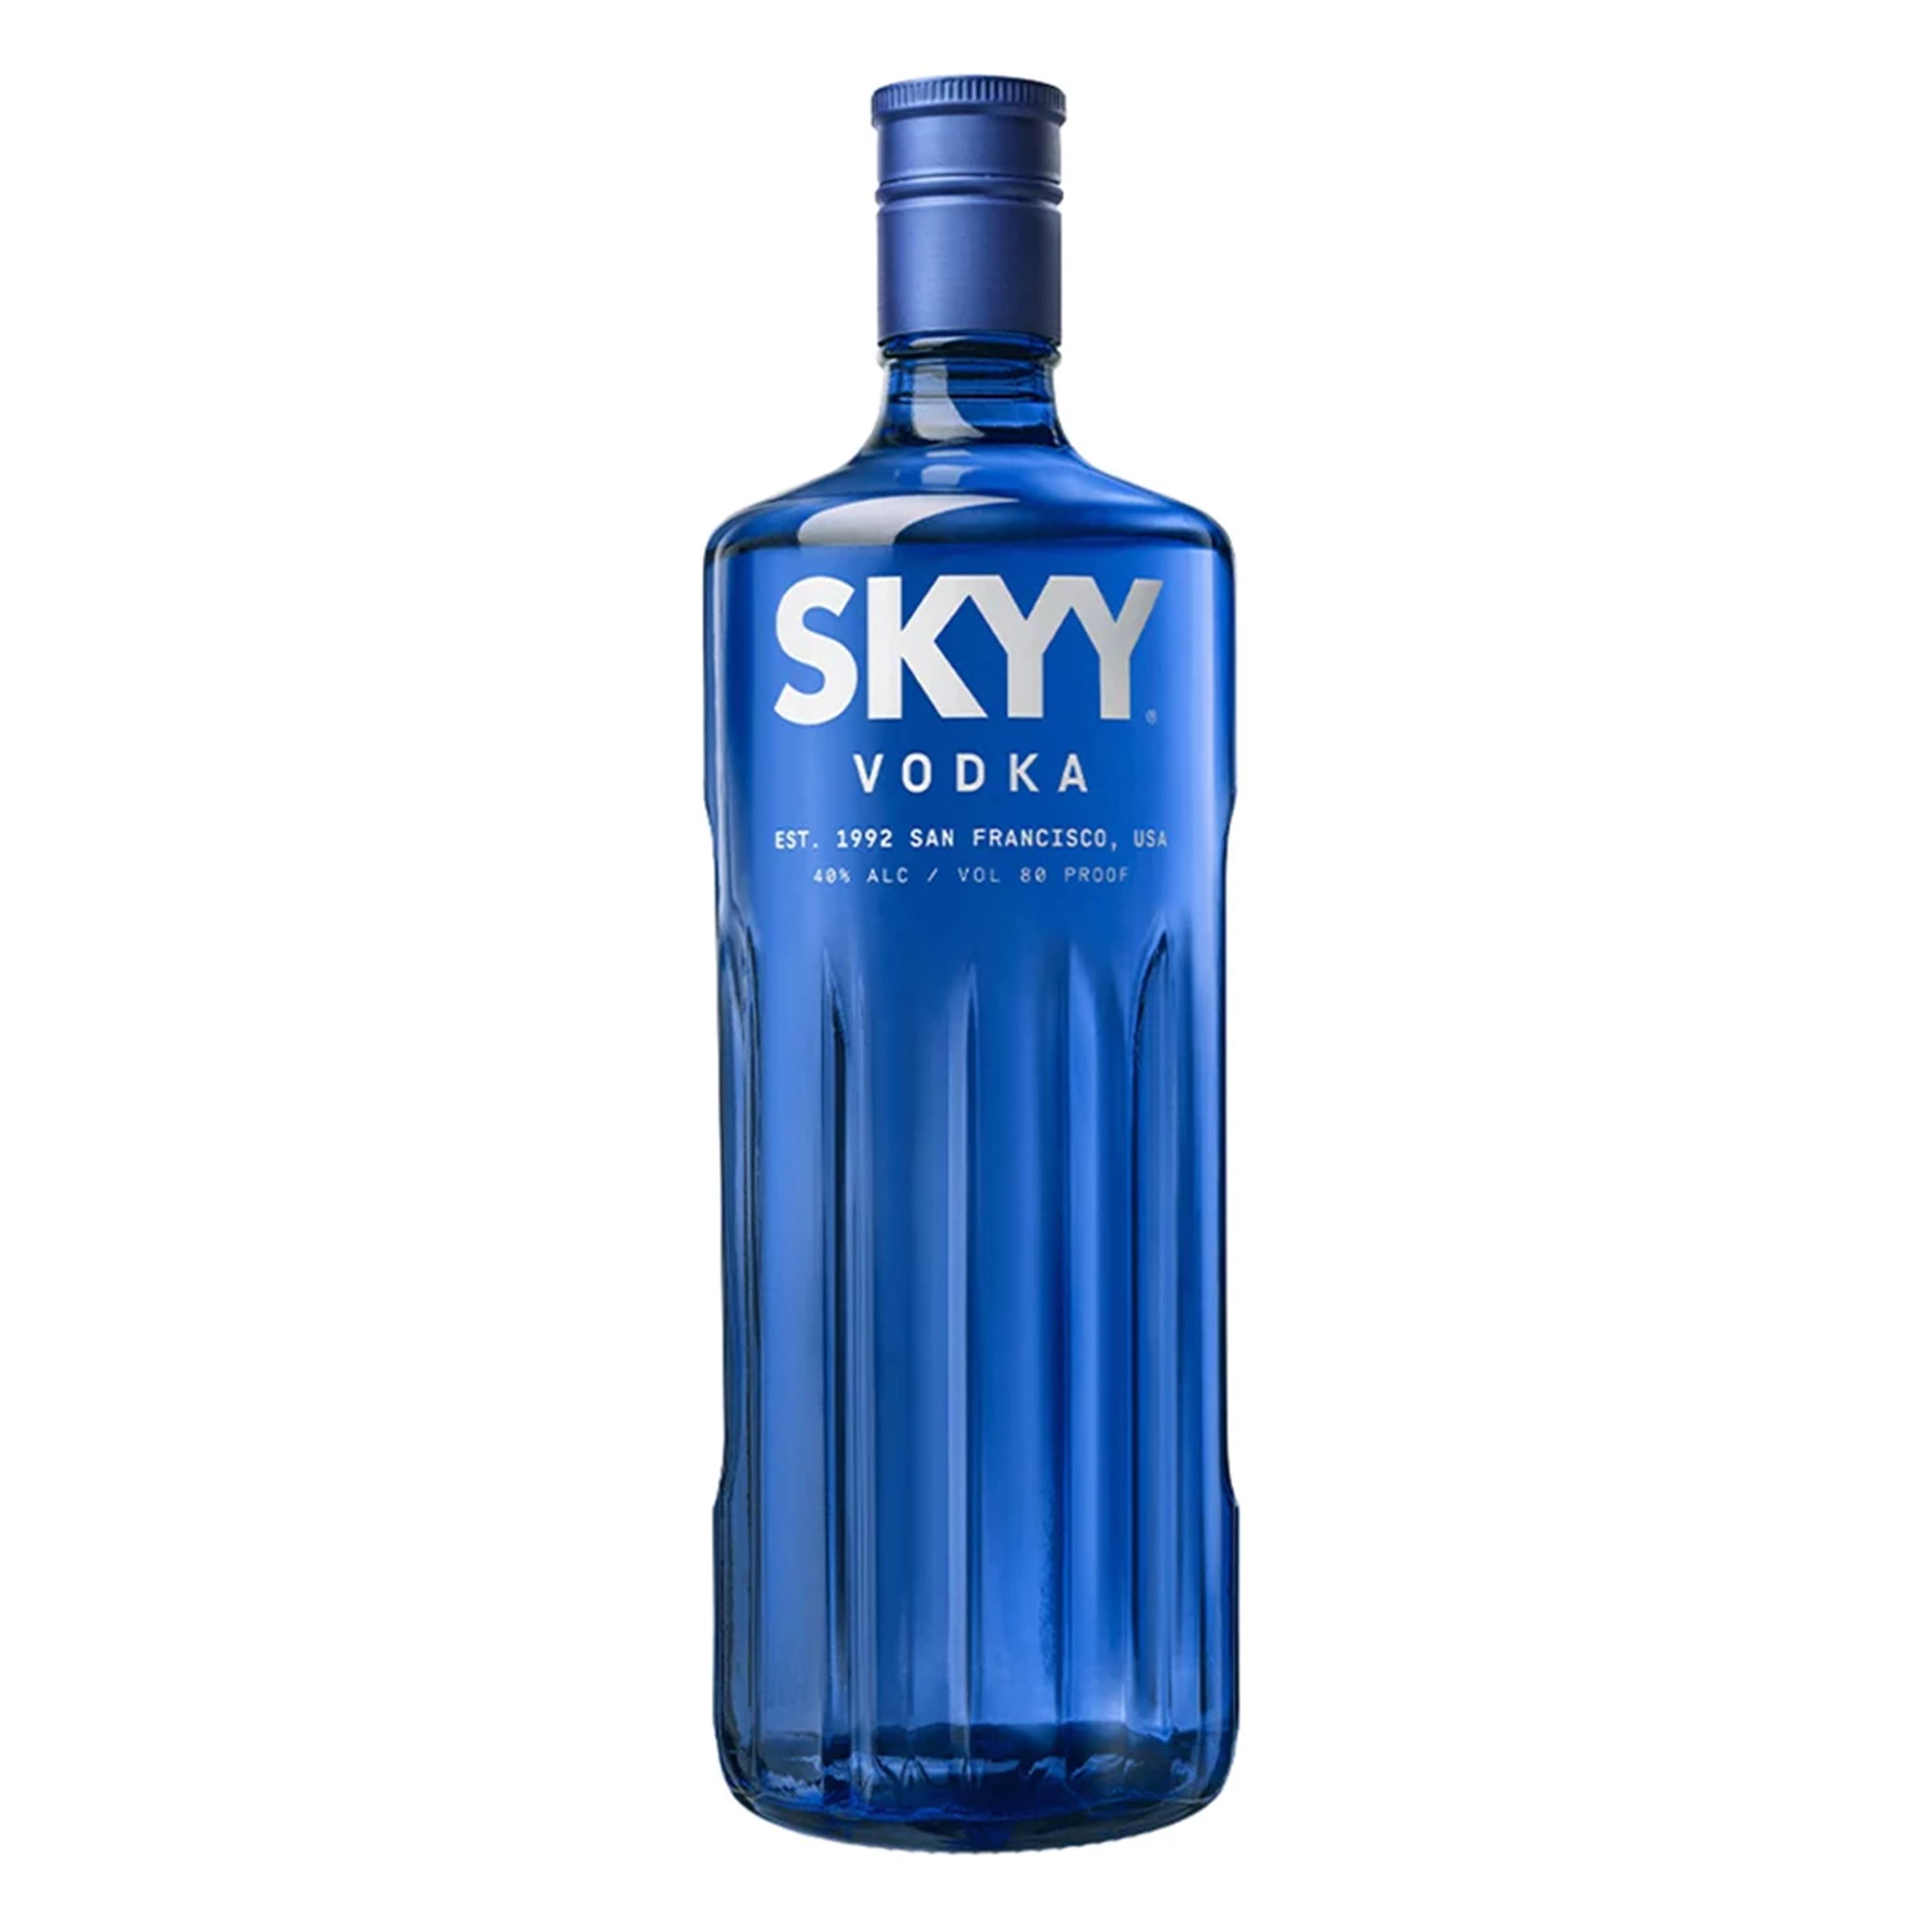 Skyy Vodka - 1.75 L bottle